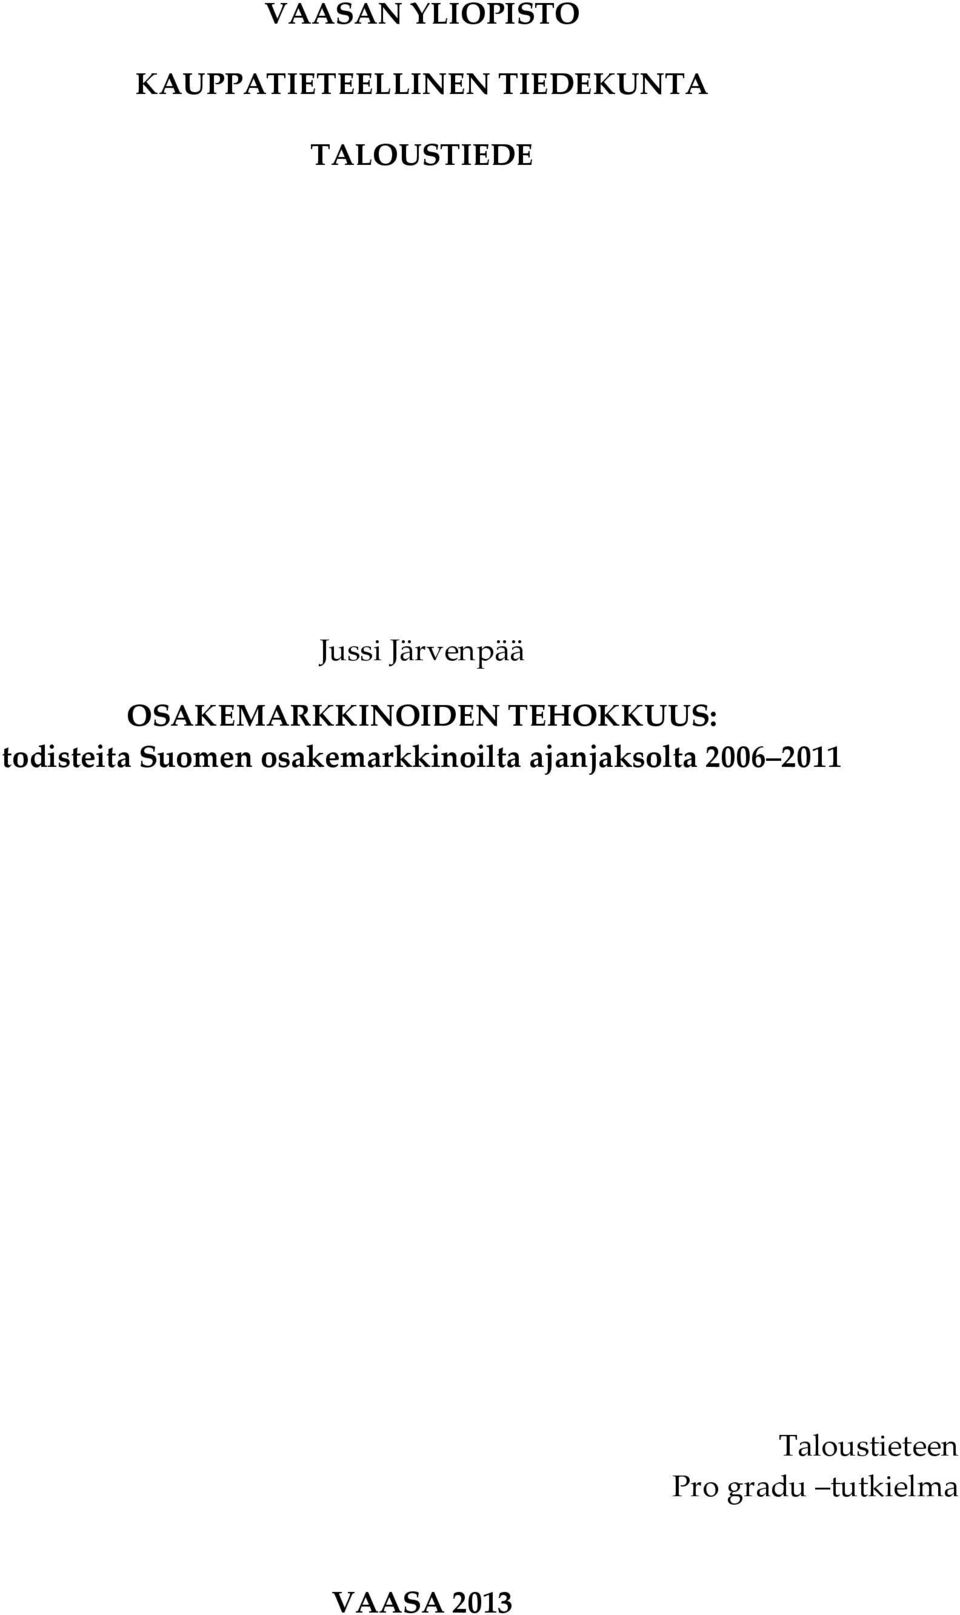 TEHOKKUUS: todisteita Suomen osakemarkkinoilta